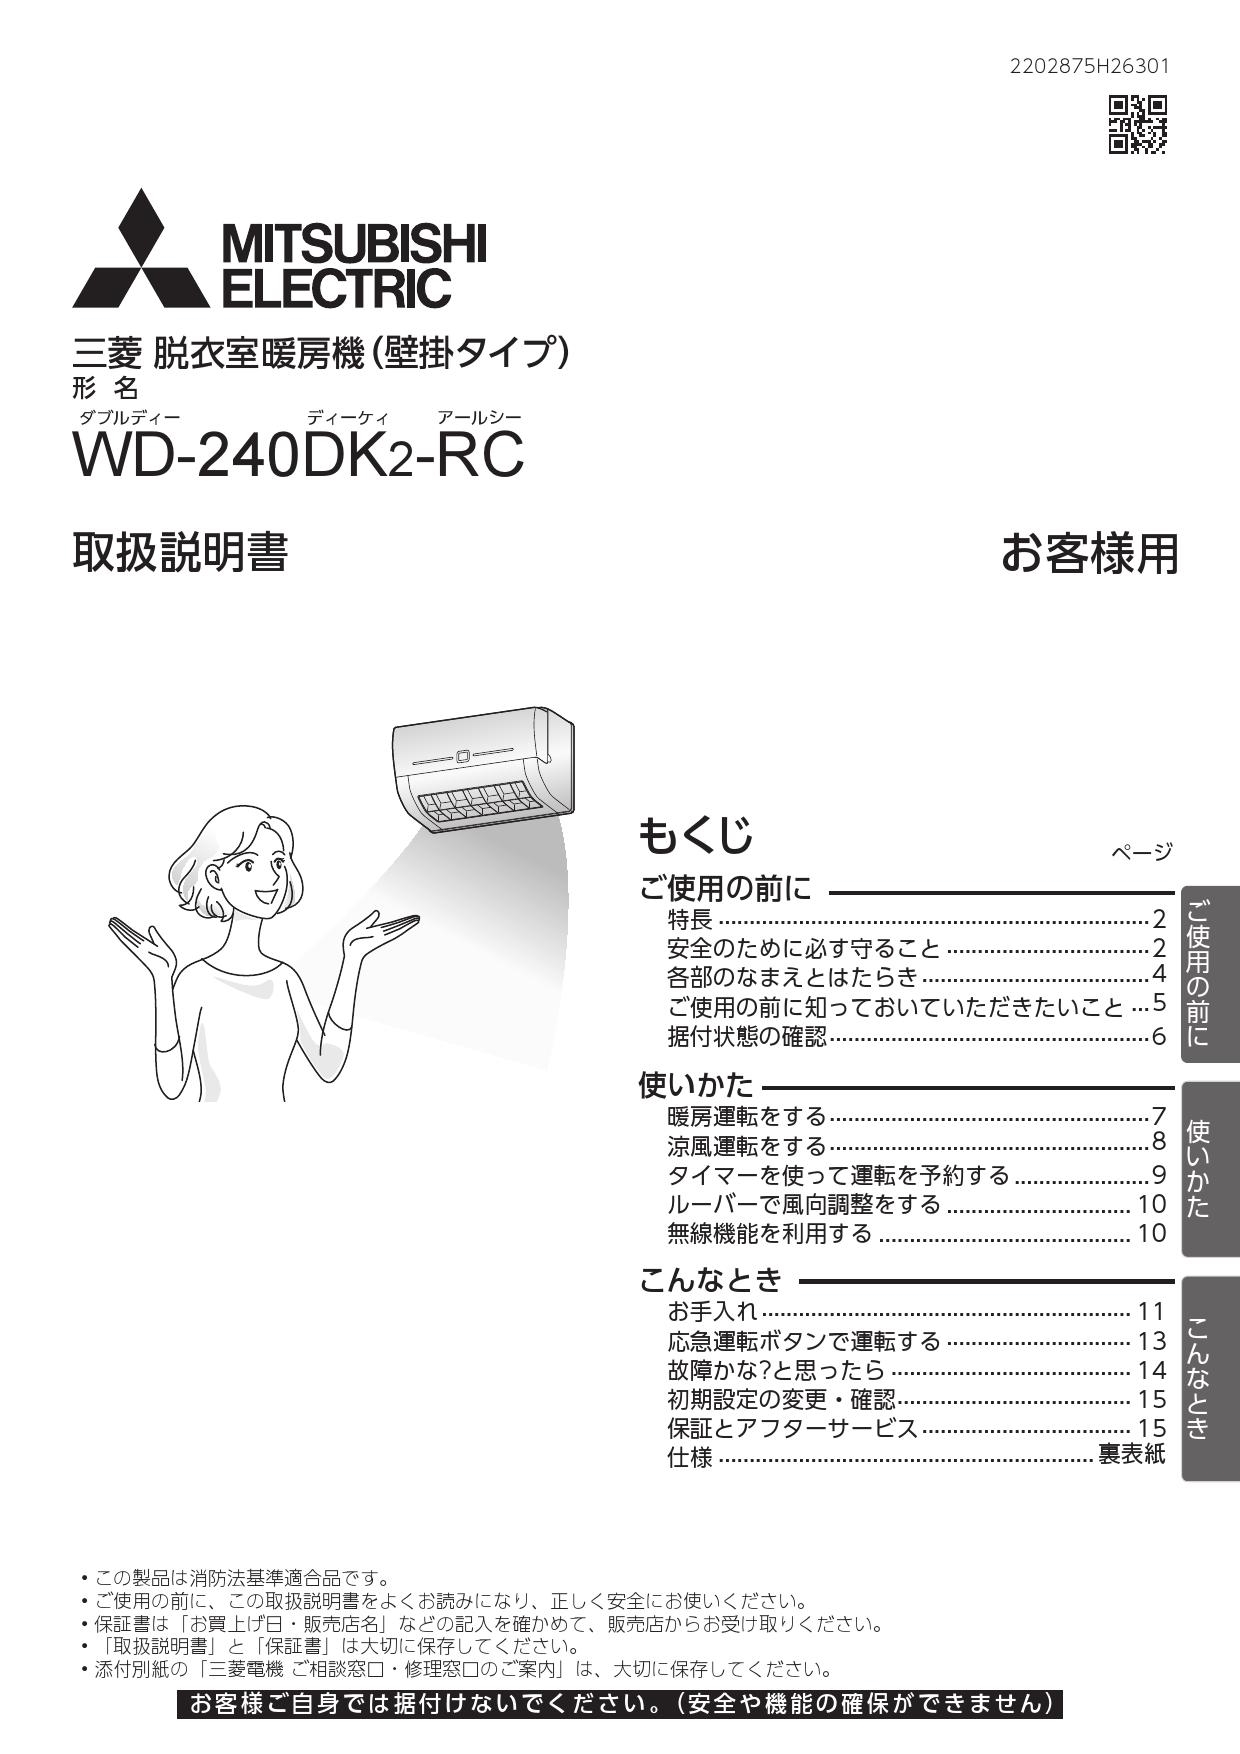 MITSUBISHI WD-240DK2 [脱衣室暖房機(温風・壁掛)]